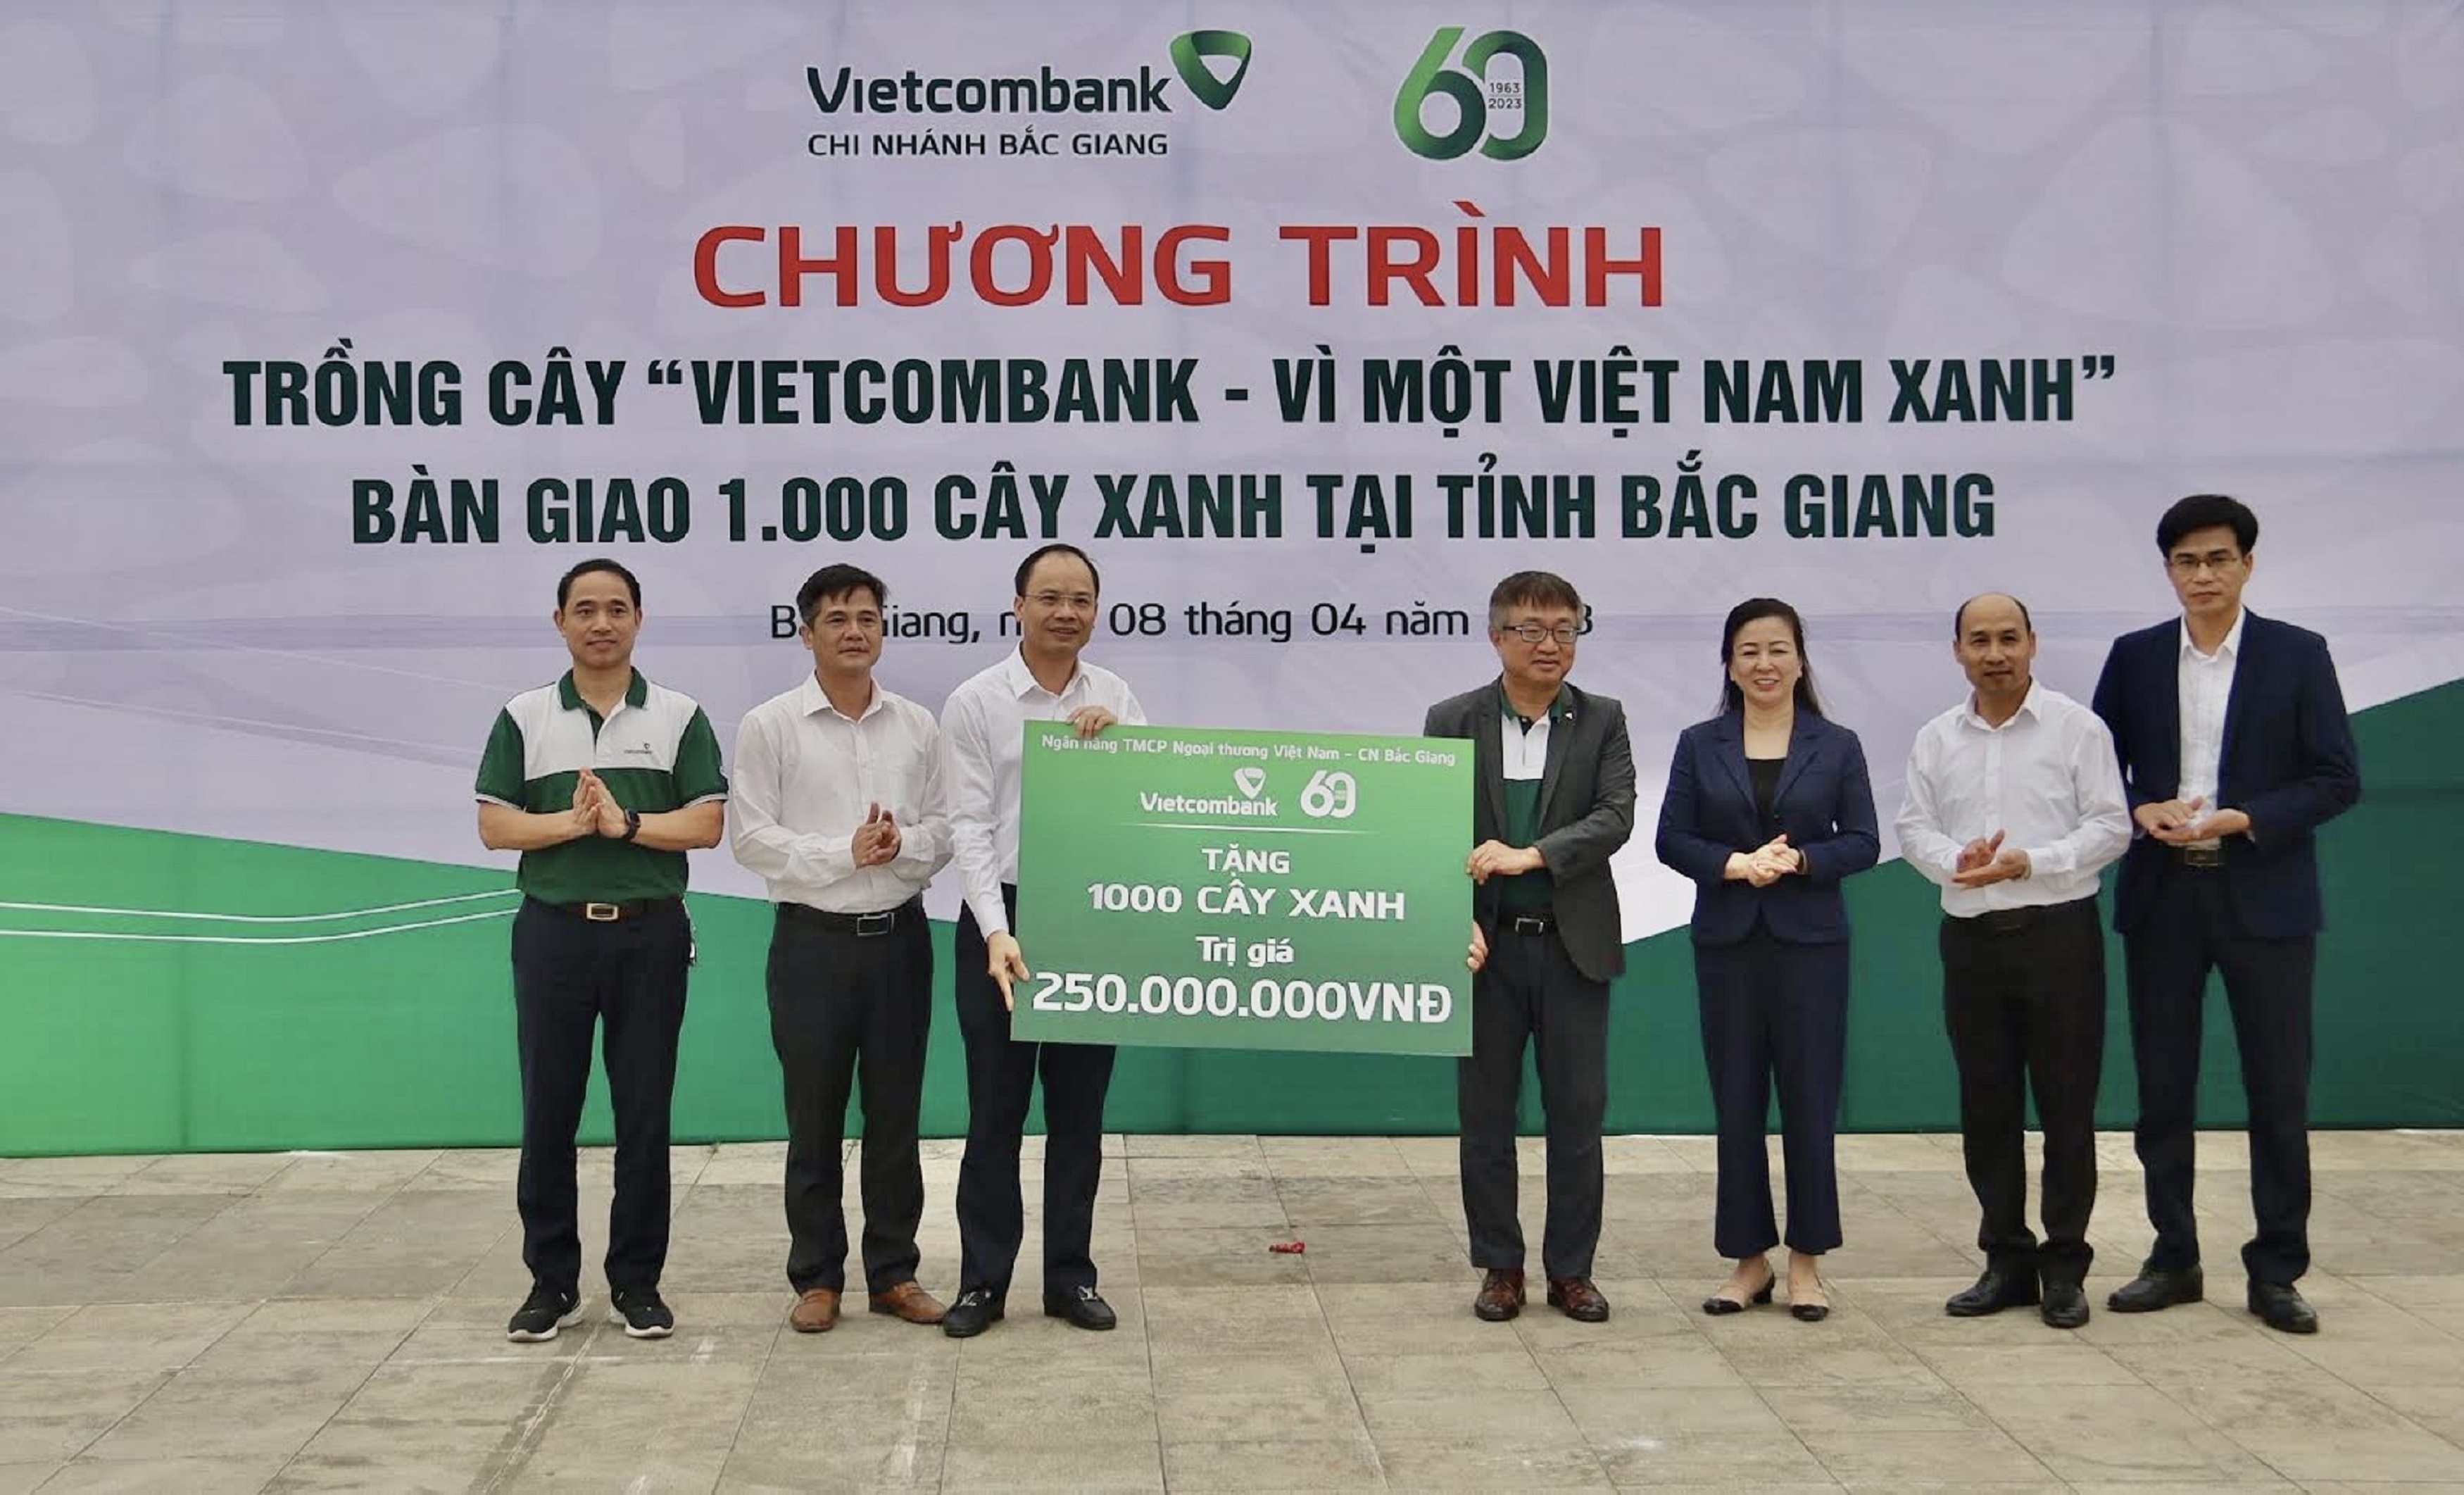 Vietcombank Bắc Giang tổ chức buổi lễ trao tặng 1000 cây xanh tại tỉnh Bắc Giang  